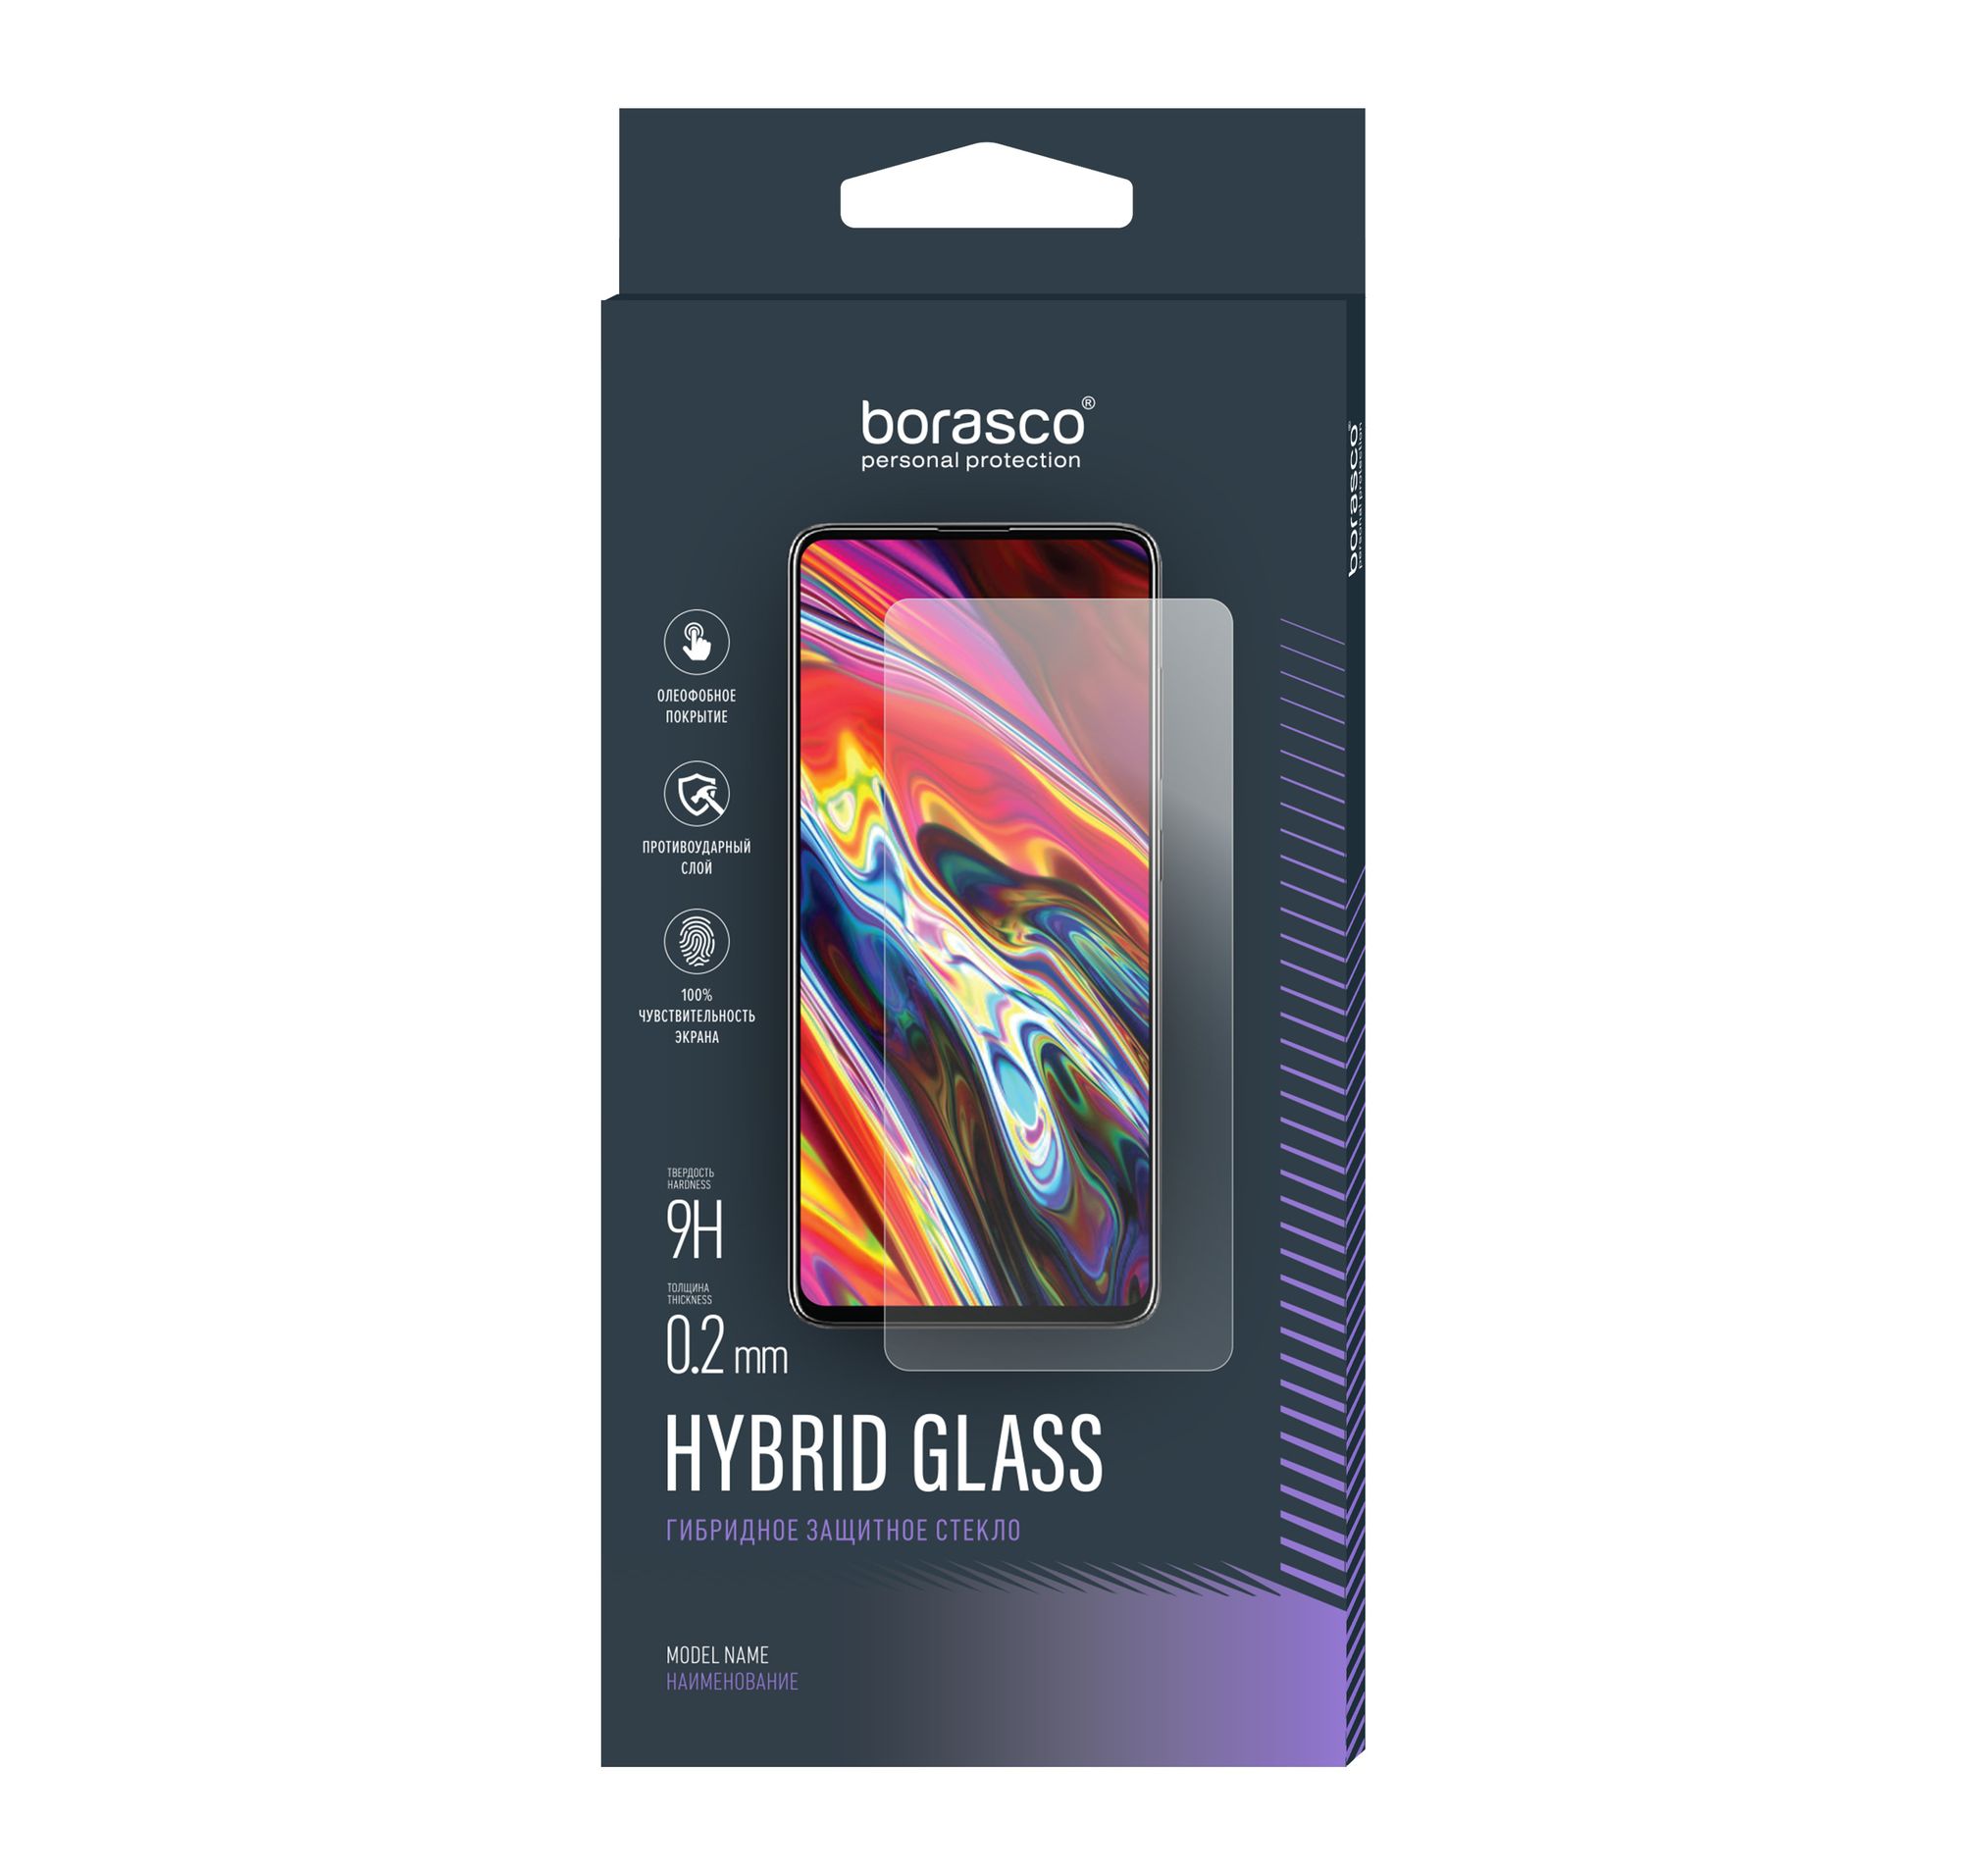 Стекло защитное Hybrid Glass VSP 0,26 мм для Samsung Galaxy A20/A30/A50 защитное стекло 9d для samsung a20 a30 a20 sm a205fn ds a30 sm a305f ds 6 4 a20 a30 2 шт